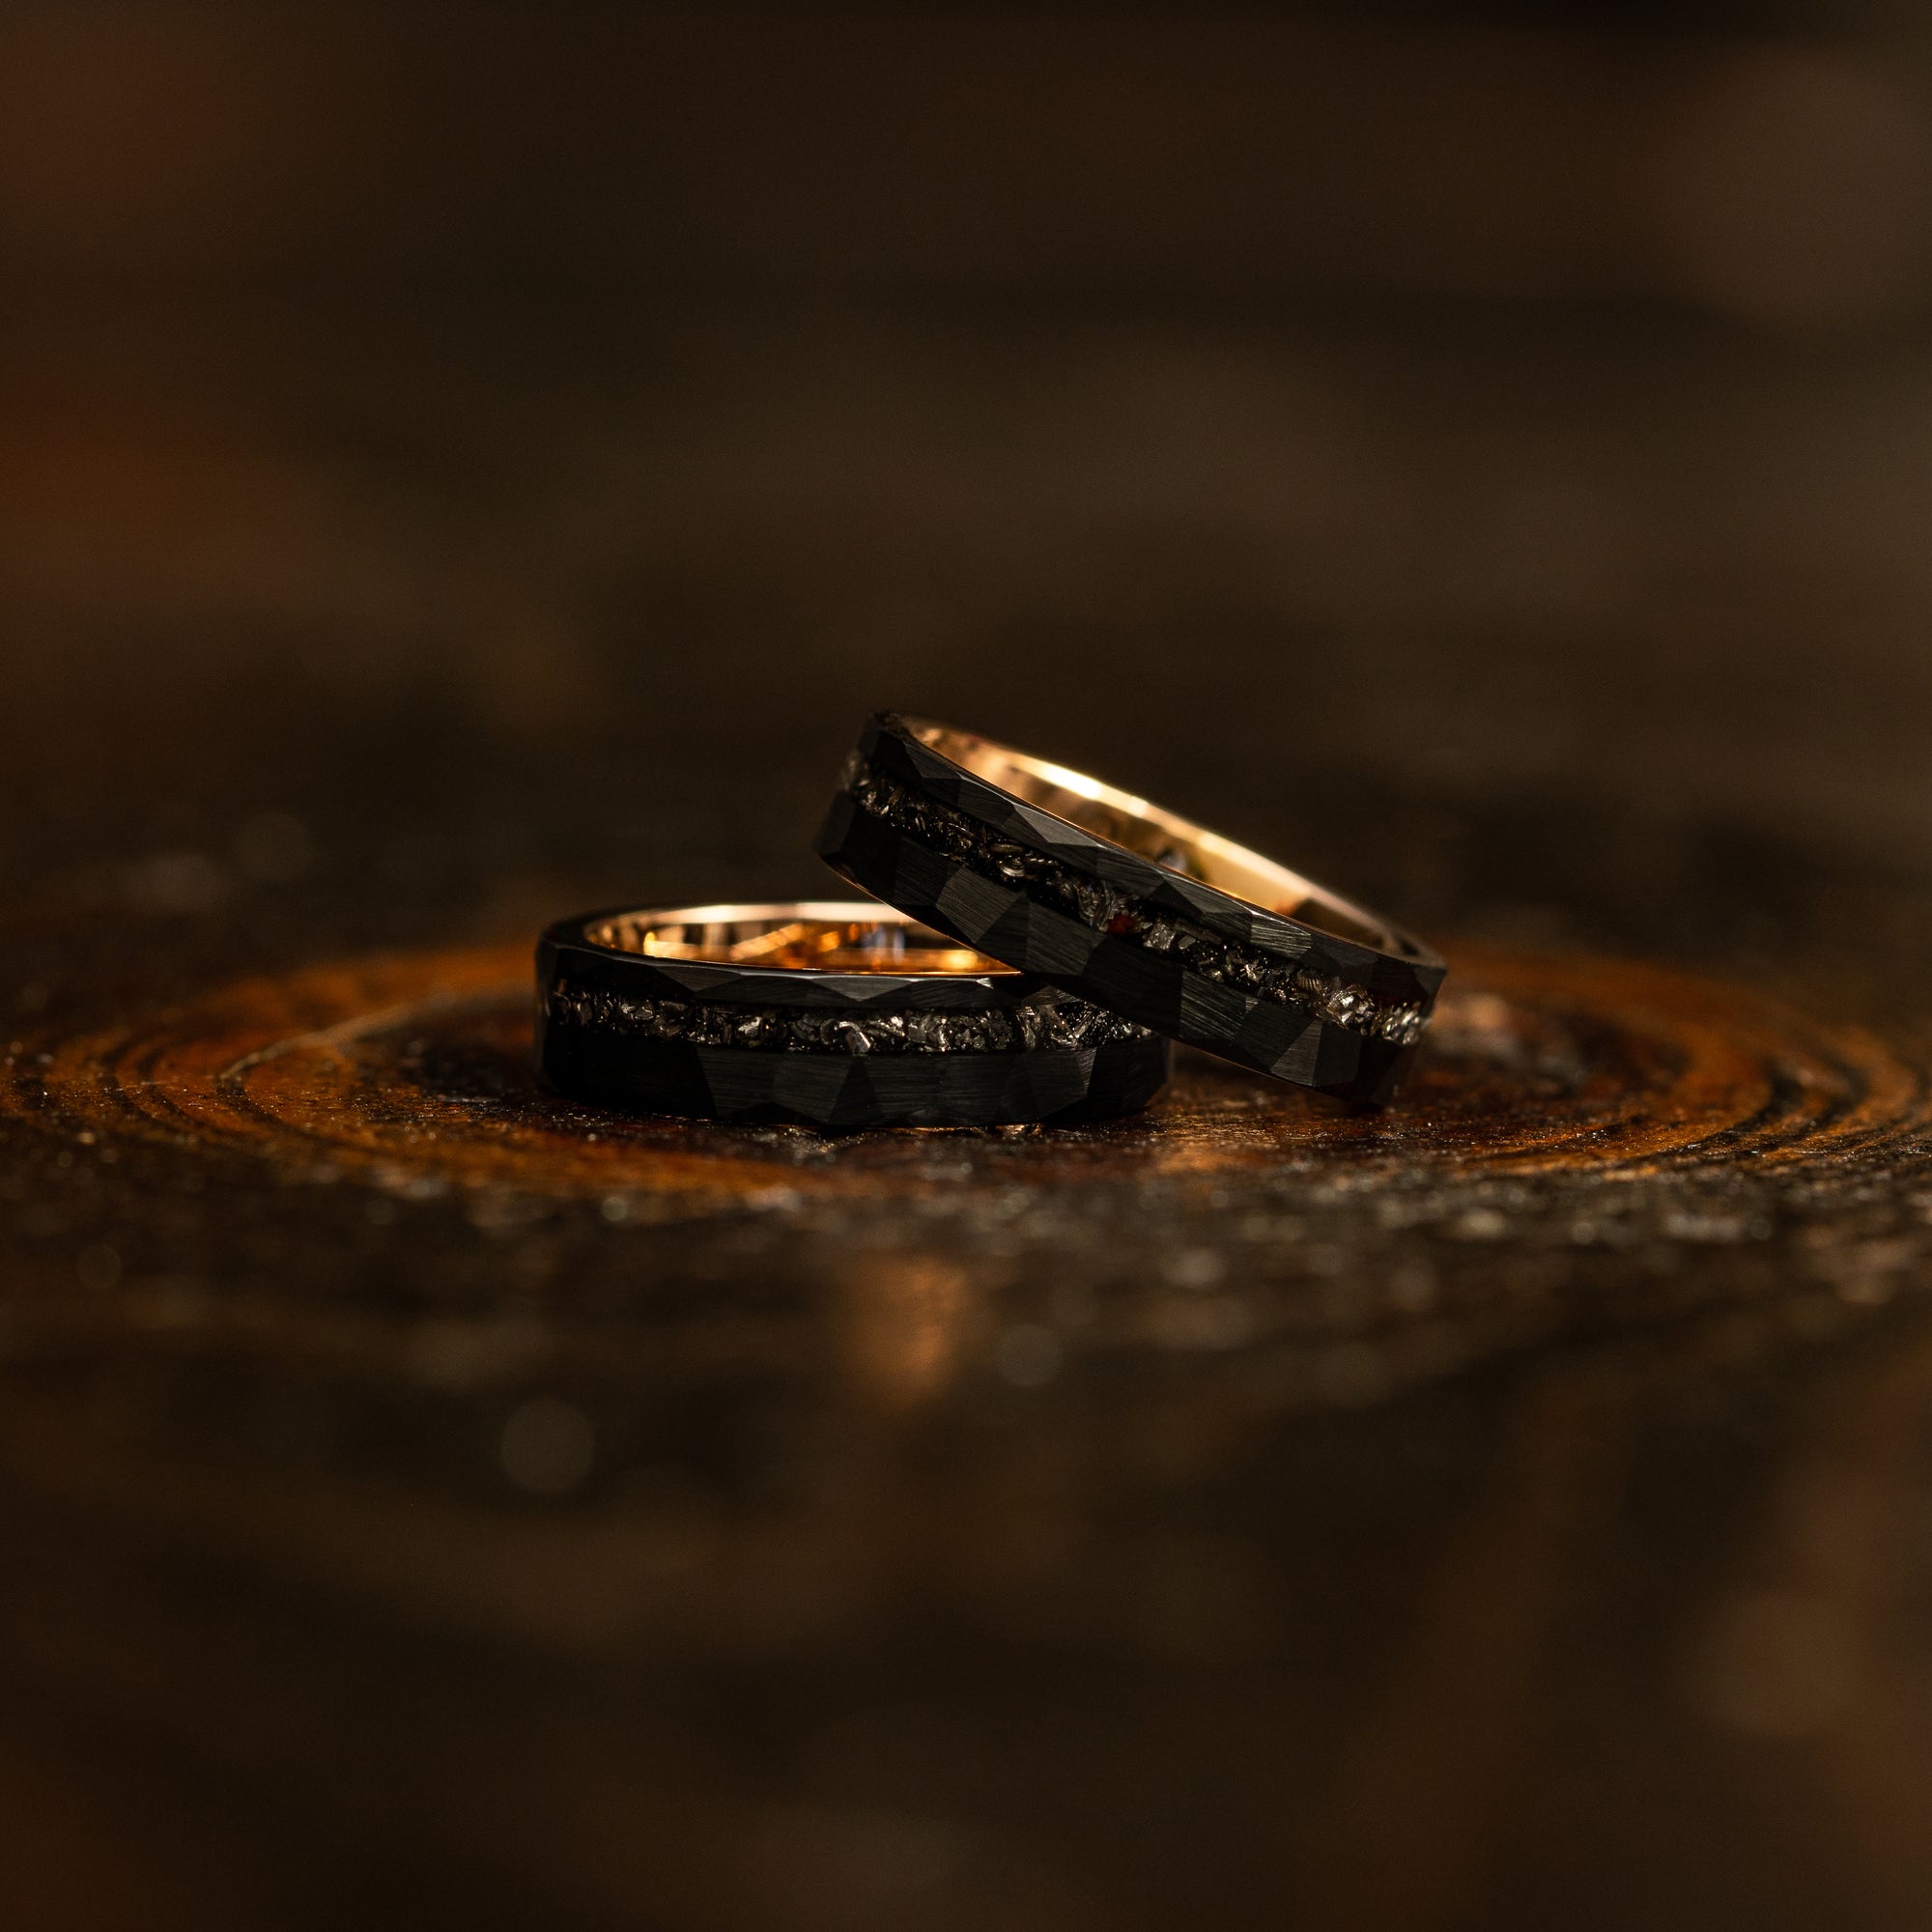 "Zeus" Hammered Tungsten Carbide Ring- Womens Black X Rose Gold w/ Meteorite- 5mm